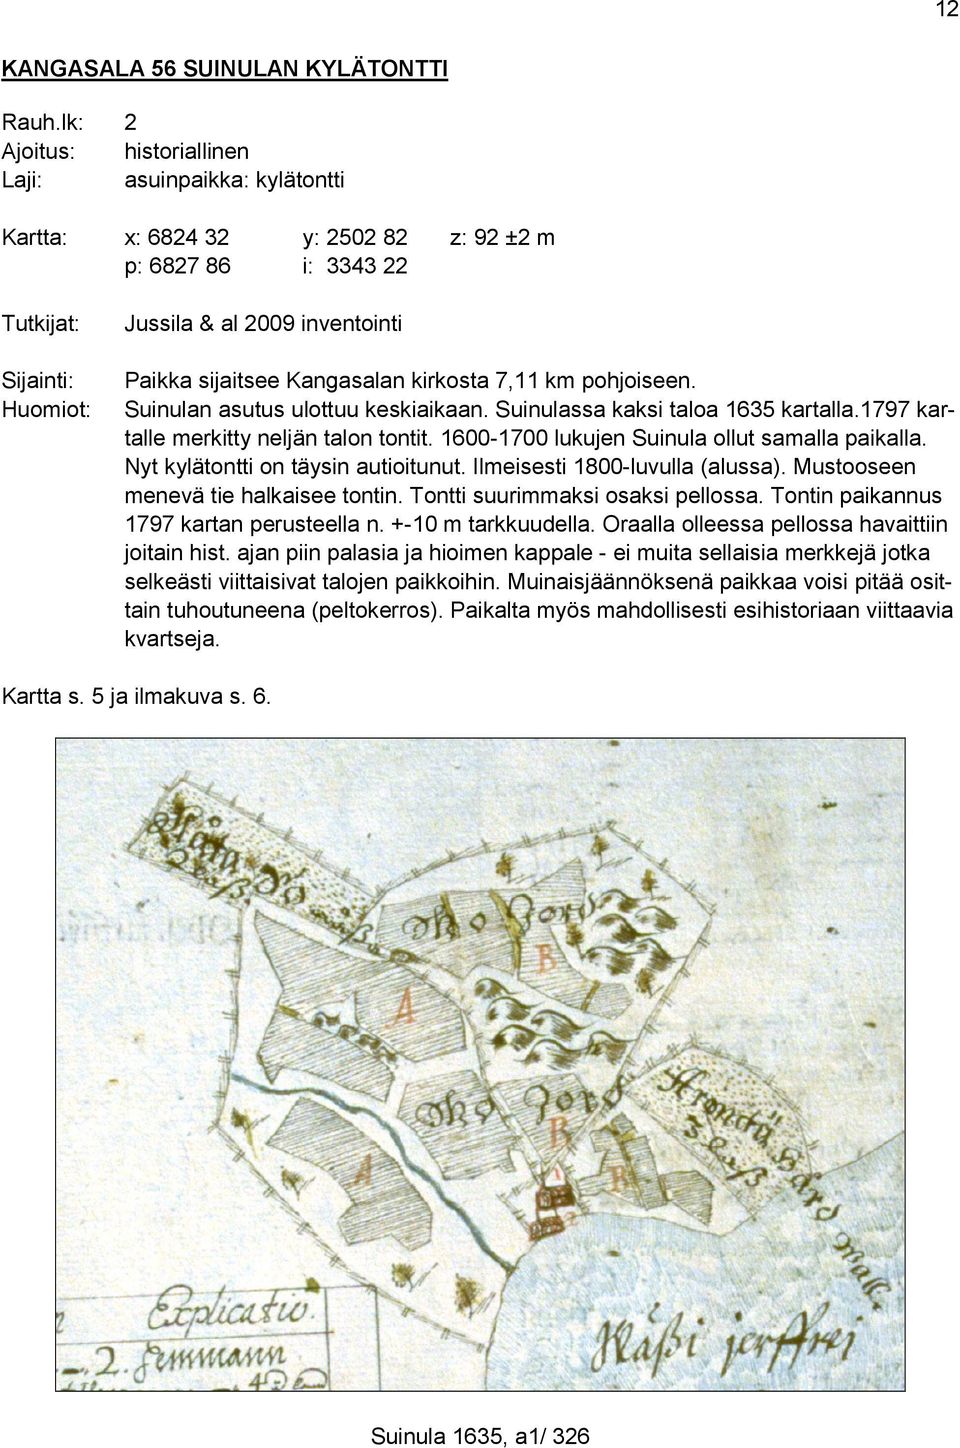 Kangasalan kirkosta 7,11 km pohjoiseen. Suinulan asutus ulottuu keskiaikaan. Suinulassa kaksi taloa 1635 kartalla.1797 kartalle merkitty neljän talon tontit.